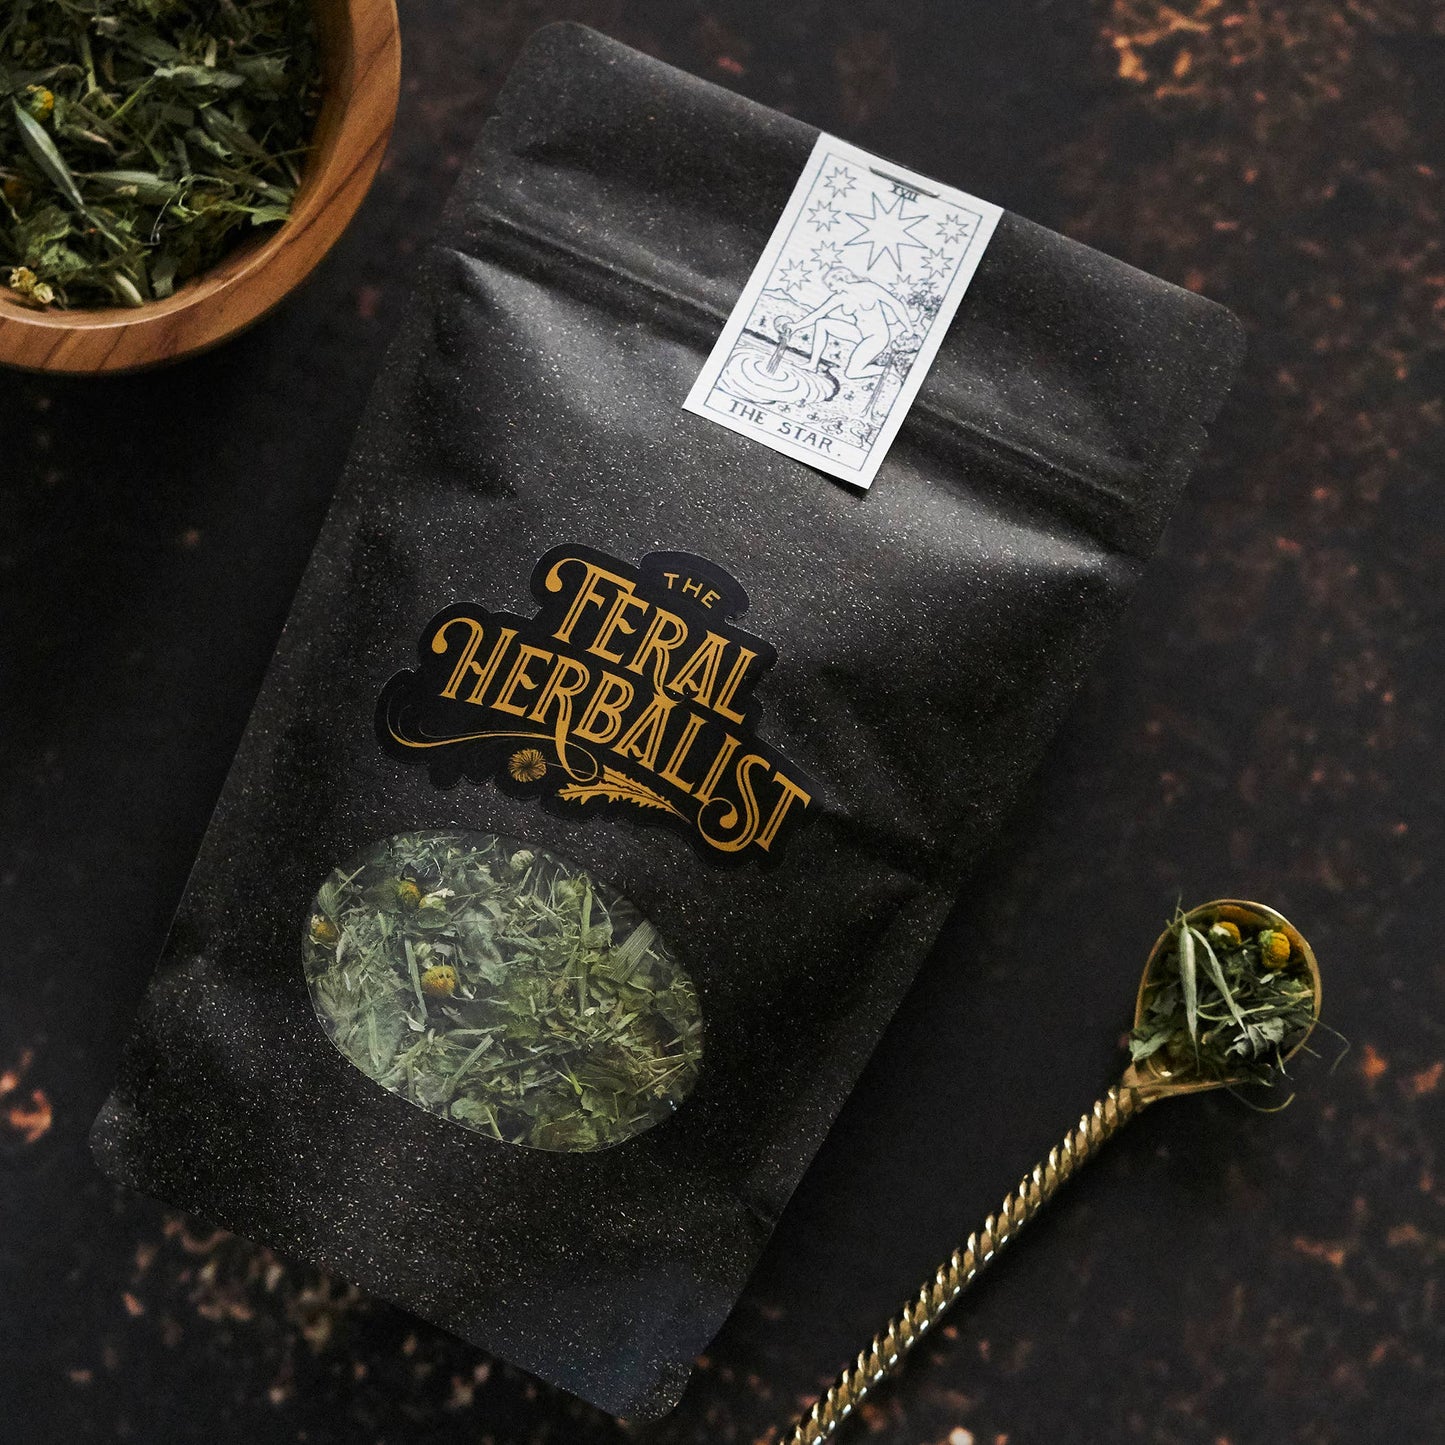 The Star-a Tarot inspired herbal tea blend